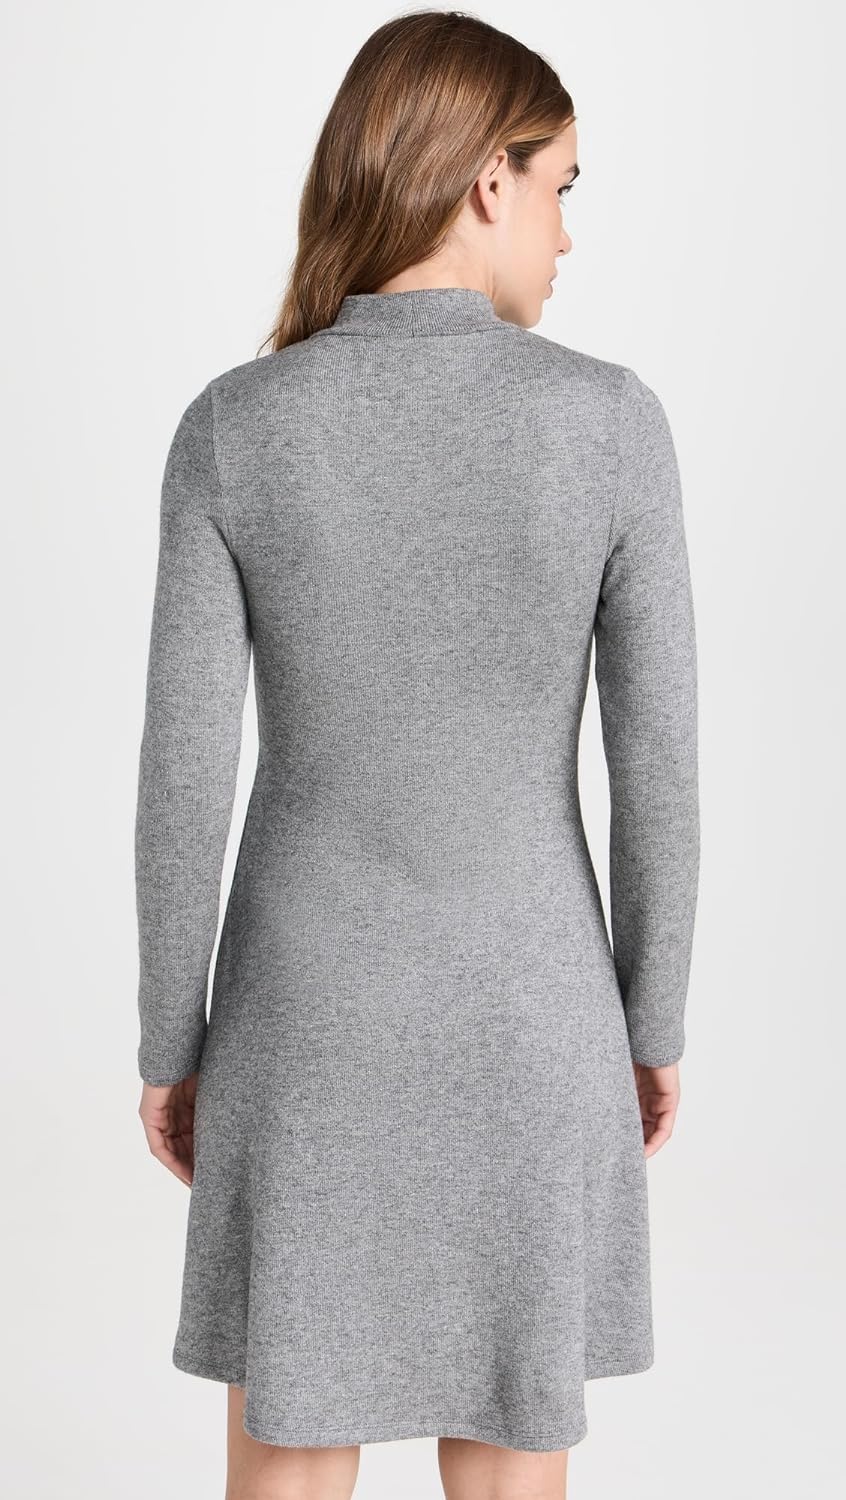 Vince Women's Long Sleeve Short Knit Sweater Dress Silver Dust